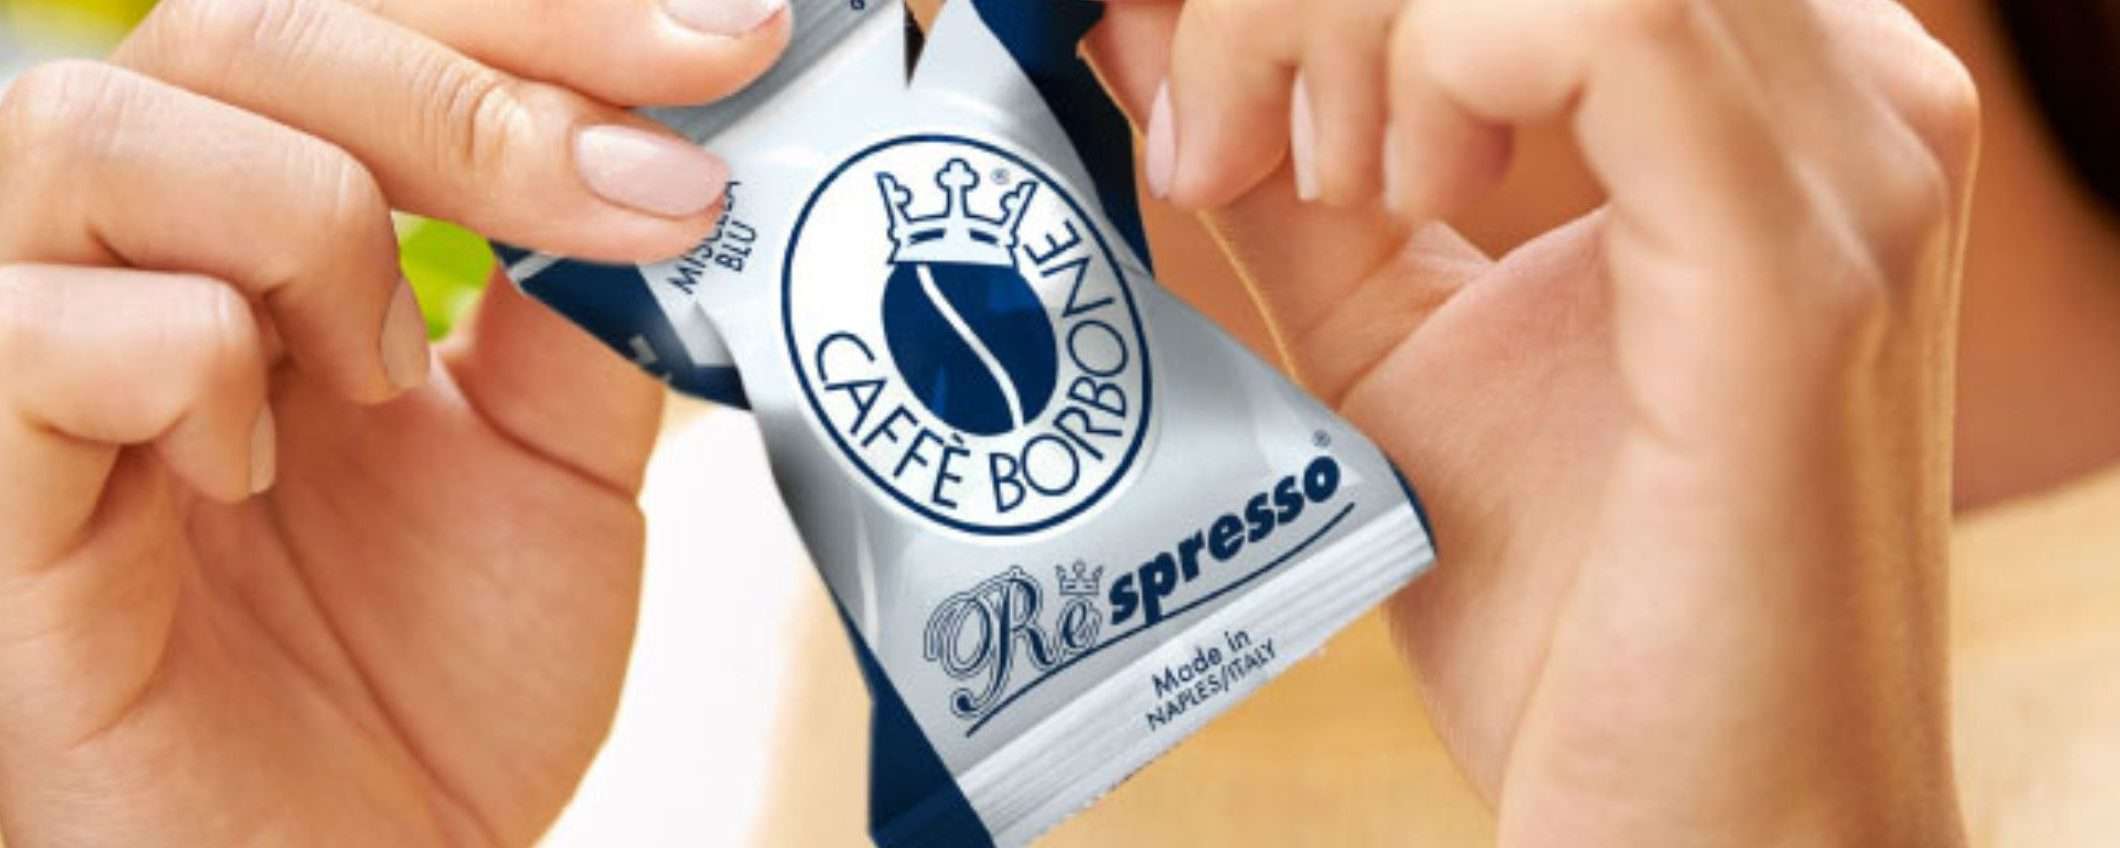 Caffè Borbone capsule tipo Nespresso a 0,16€ su Amazon: promo scorta SHOCK